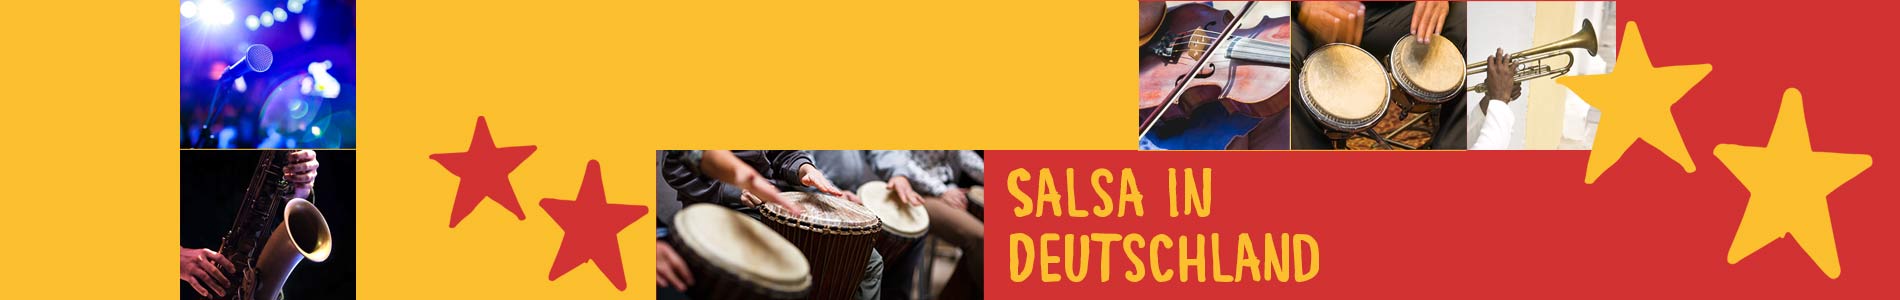 Salsa in Didderse – Salsa lernen und tanzen, Tanzkurse, Partys, Veranstaltungen